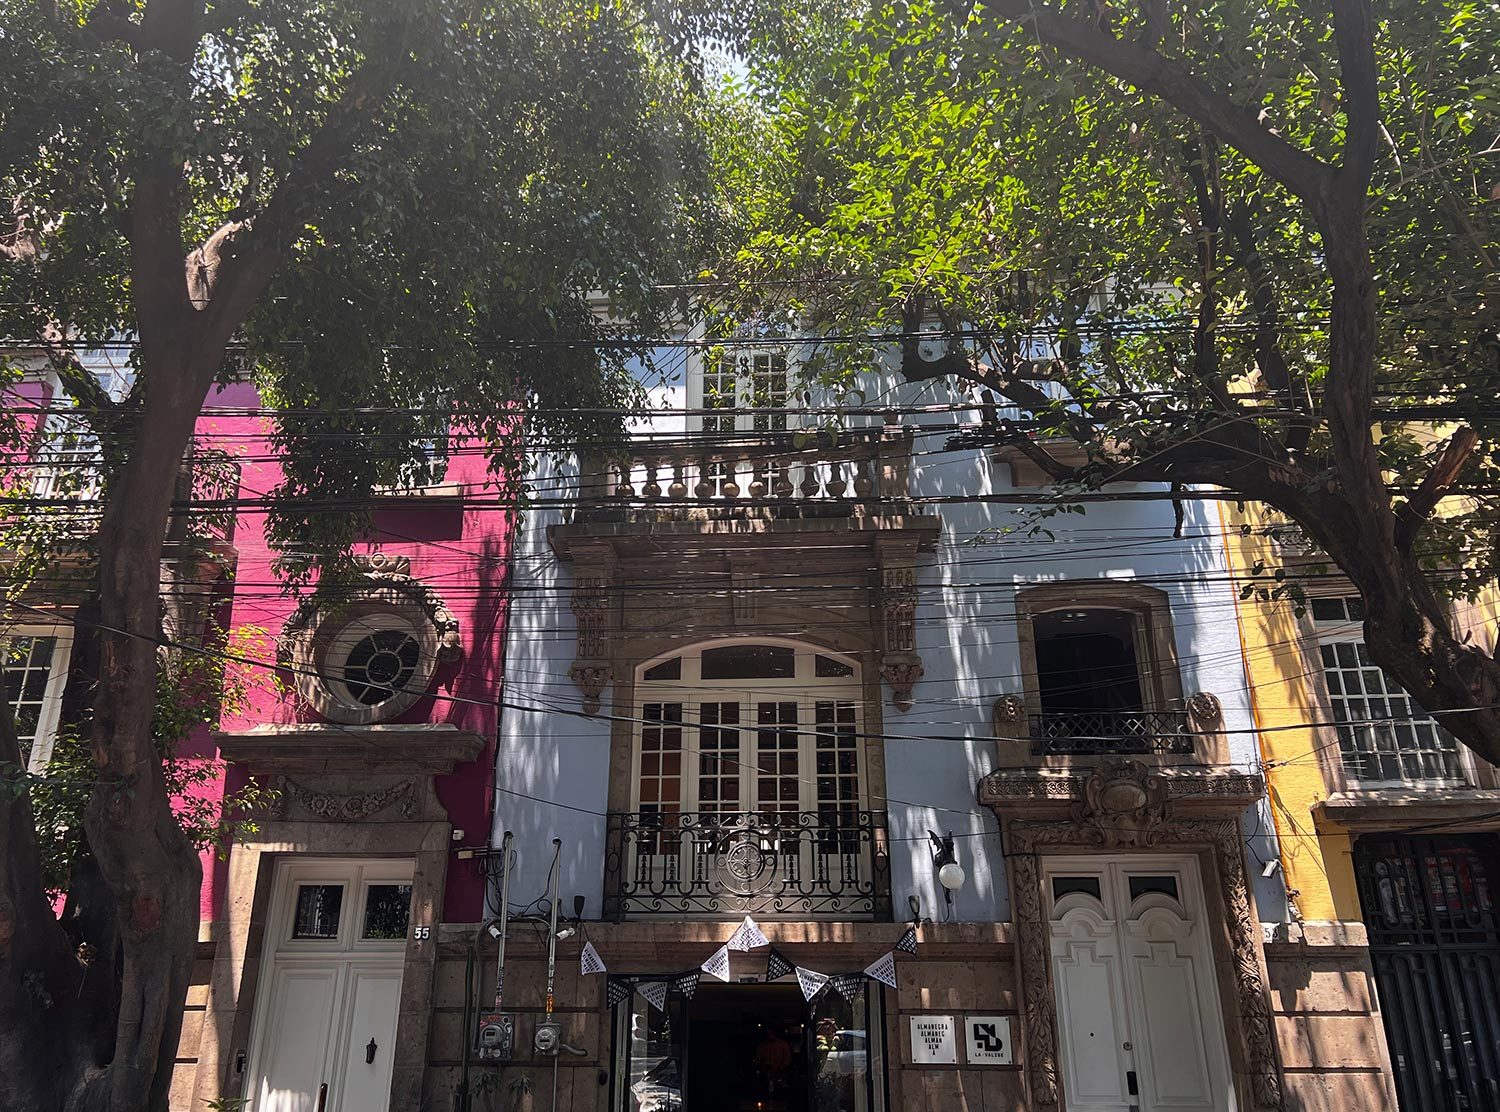 La Valise I mean, this colorful façade already sets the vibe and screams ‘Bienvenido en Mexico'